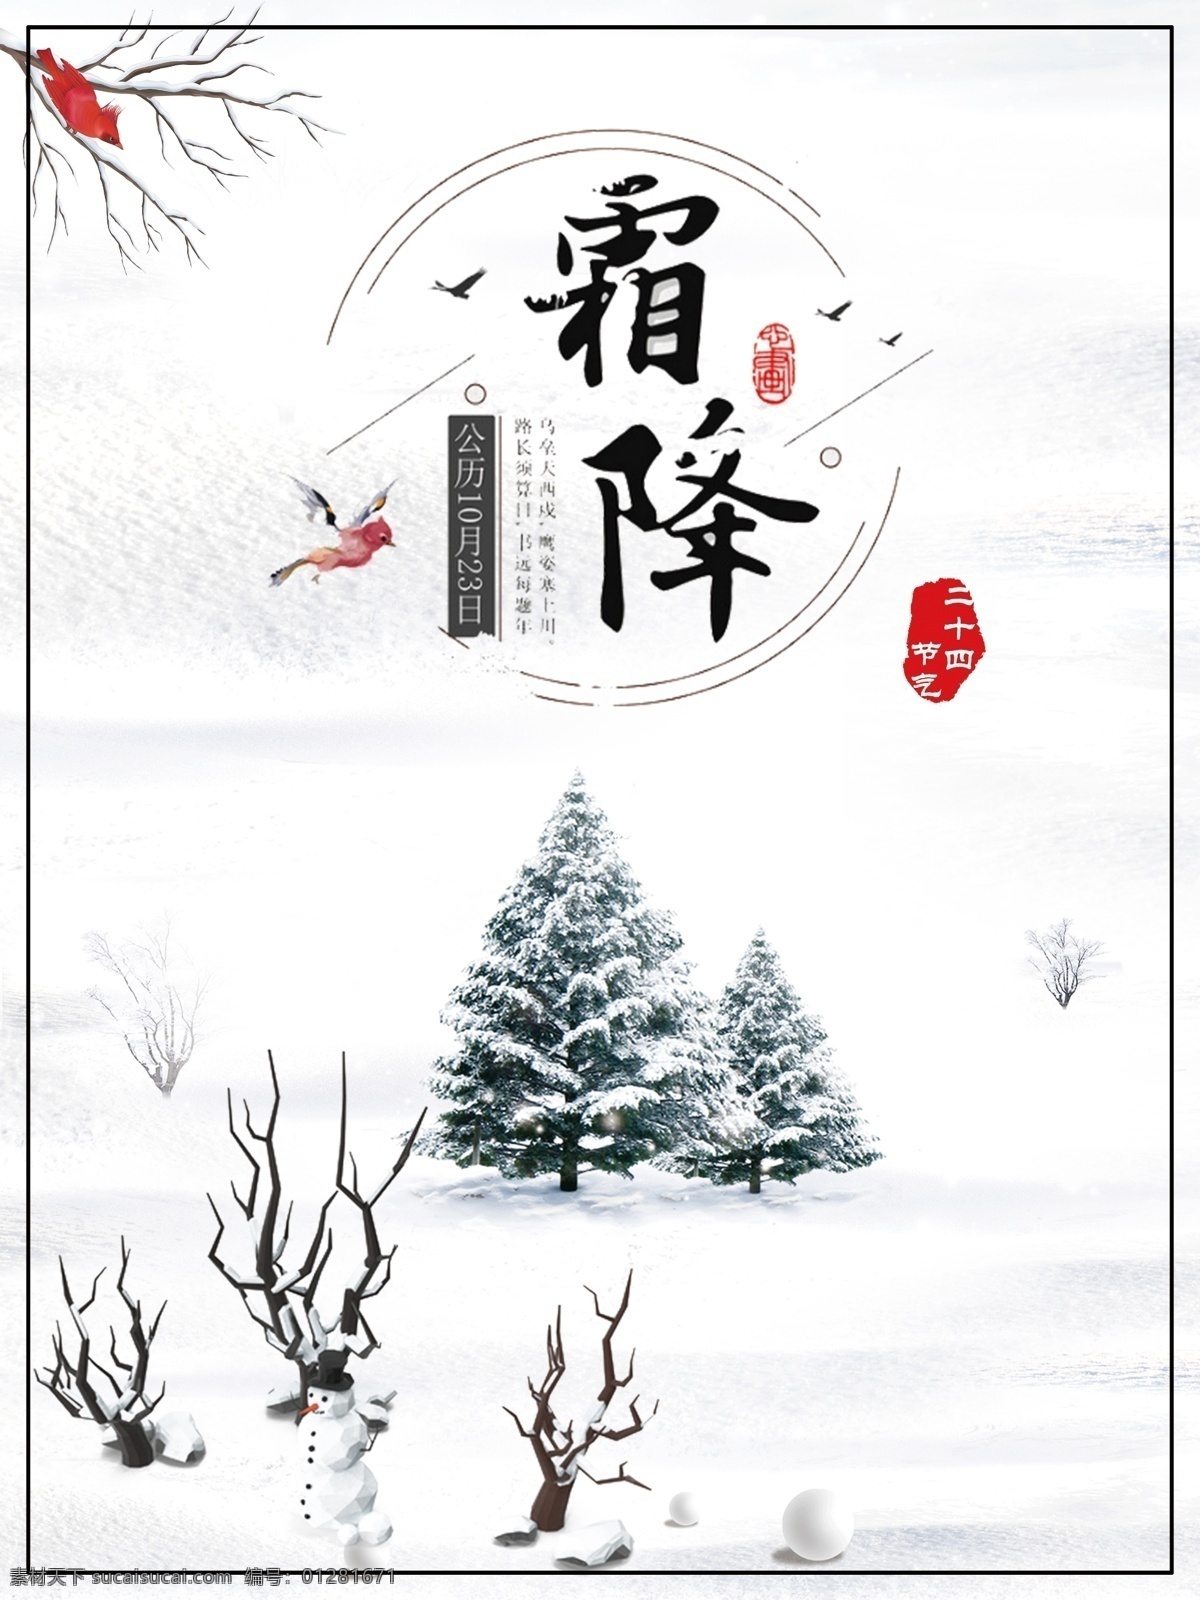 二十四节气 霜降 节日 海报 柿子 传统节日 初冬 冬季